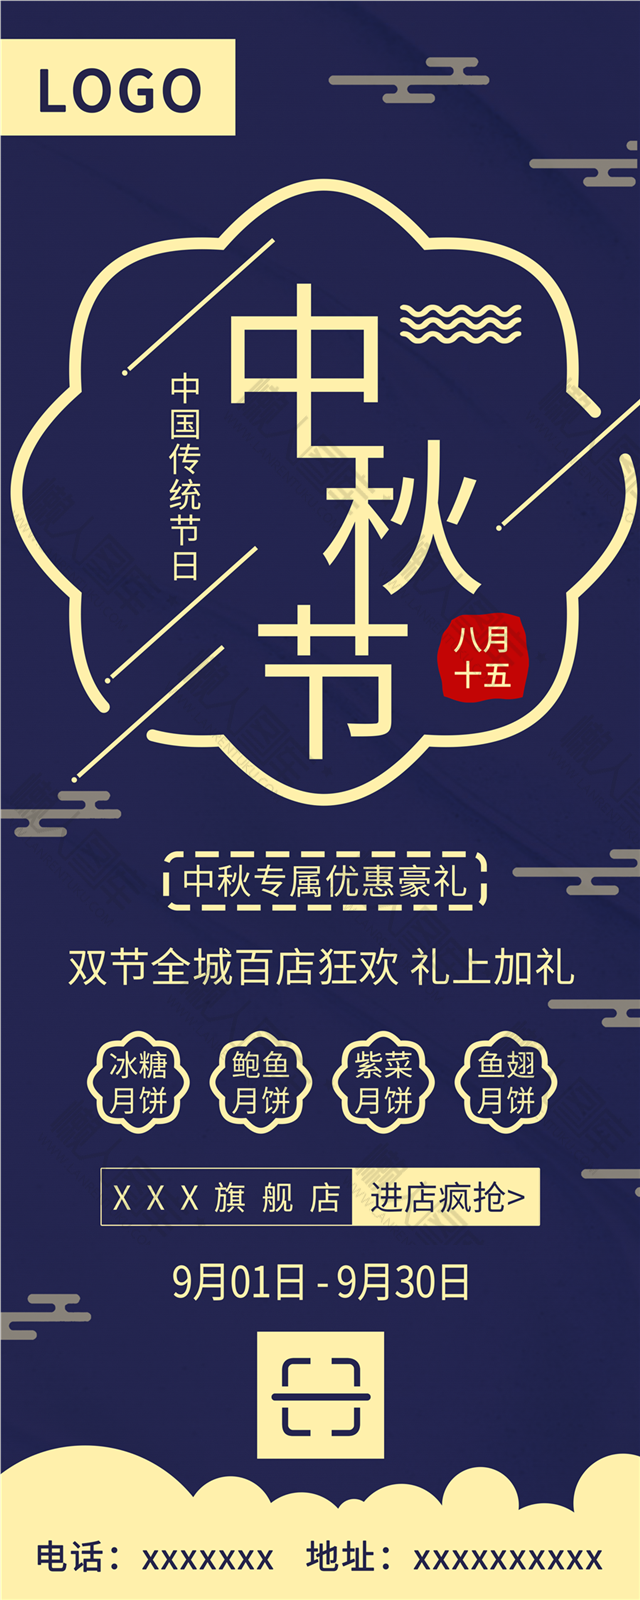 中秋节活动狂欢海报